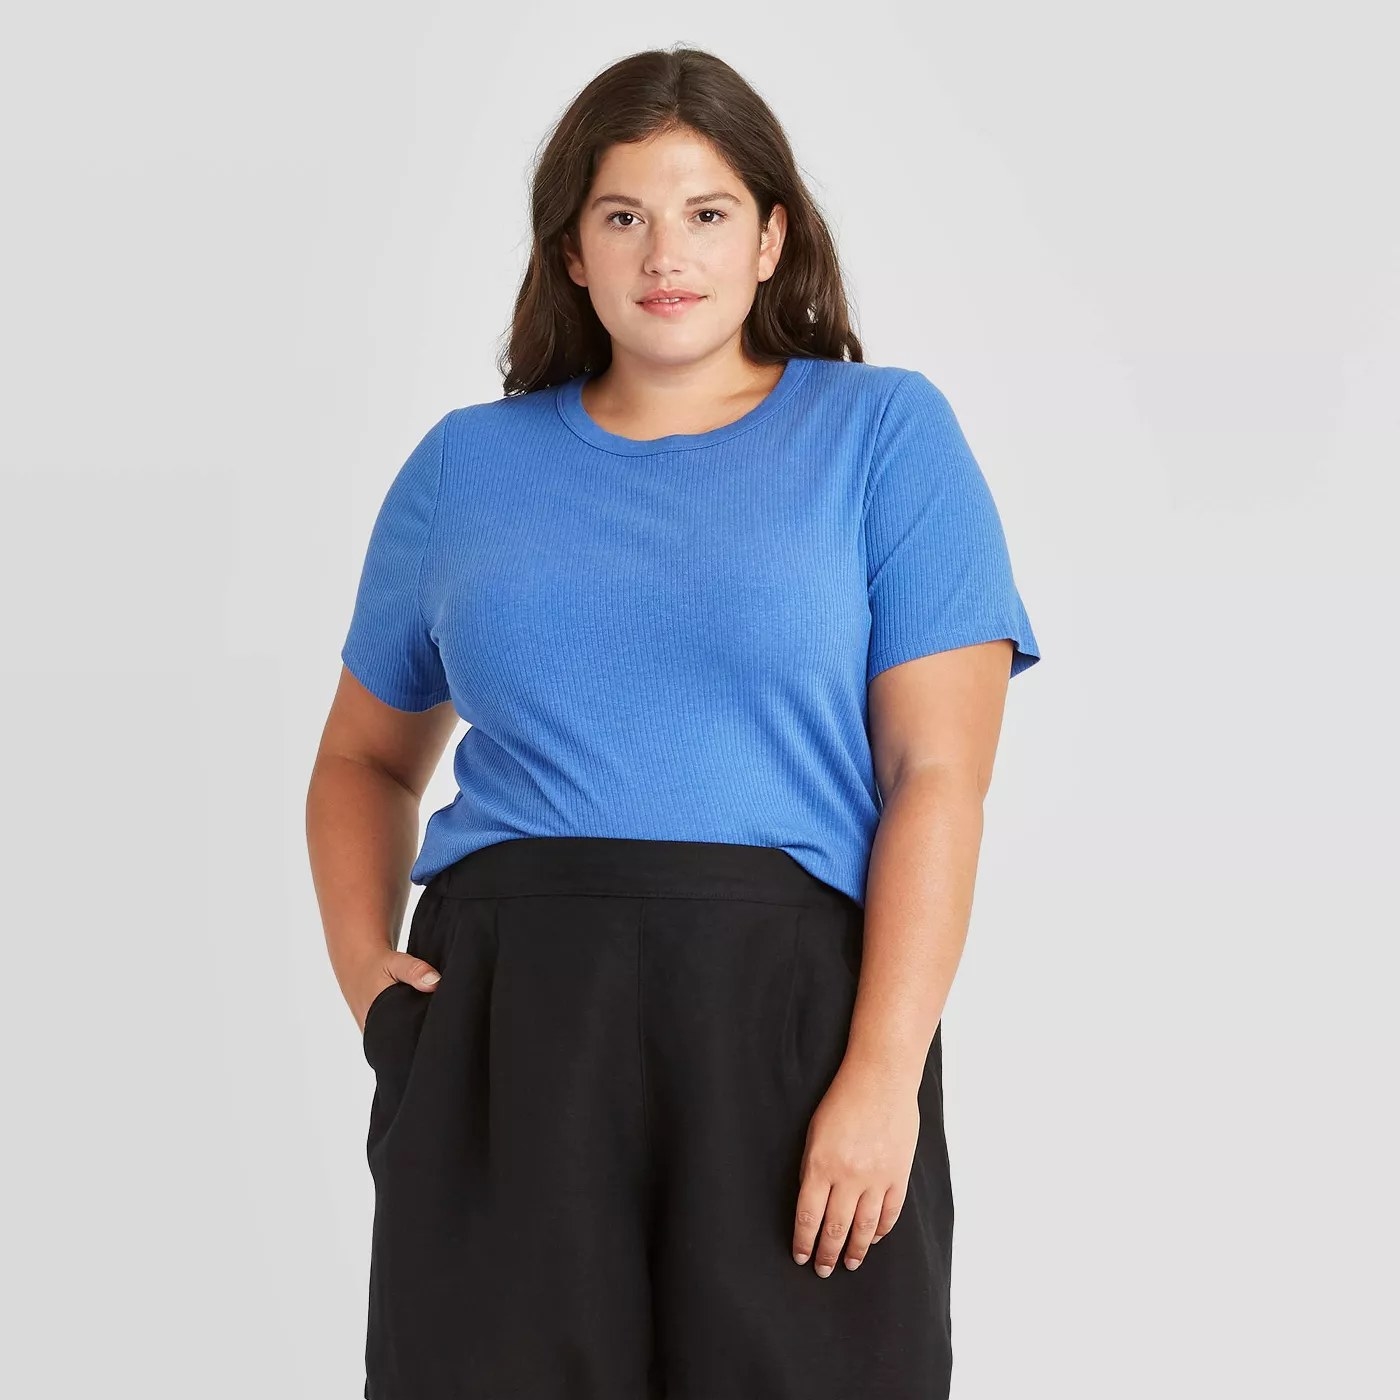 A model wearing a blue T-shirt